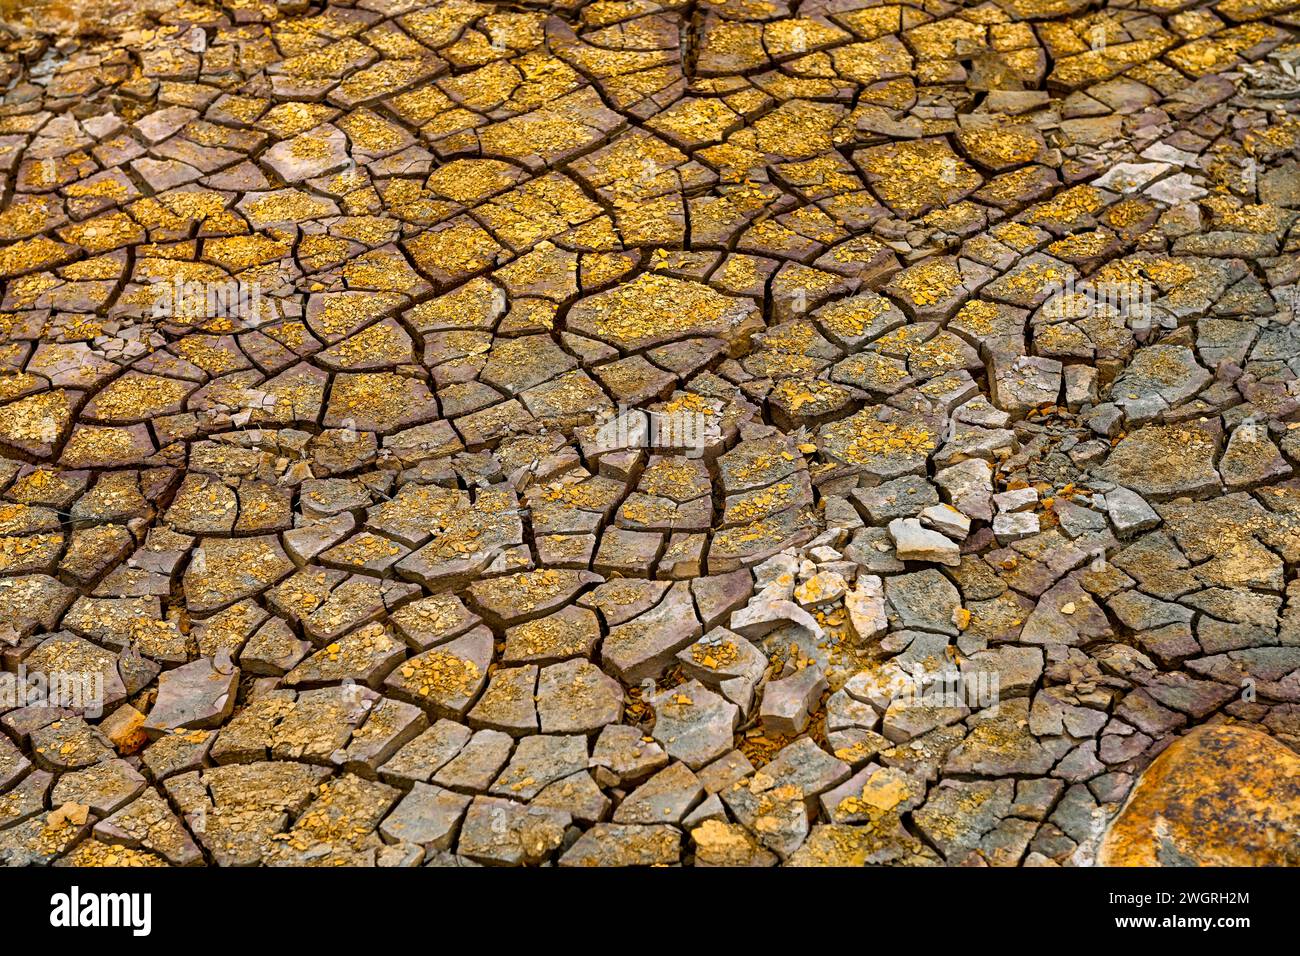 Le sol desséché de Rio Tinto est une mosaïque de terre fissurée entrecoupée de gisements minéraux brillants Banque D'Images